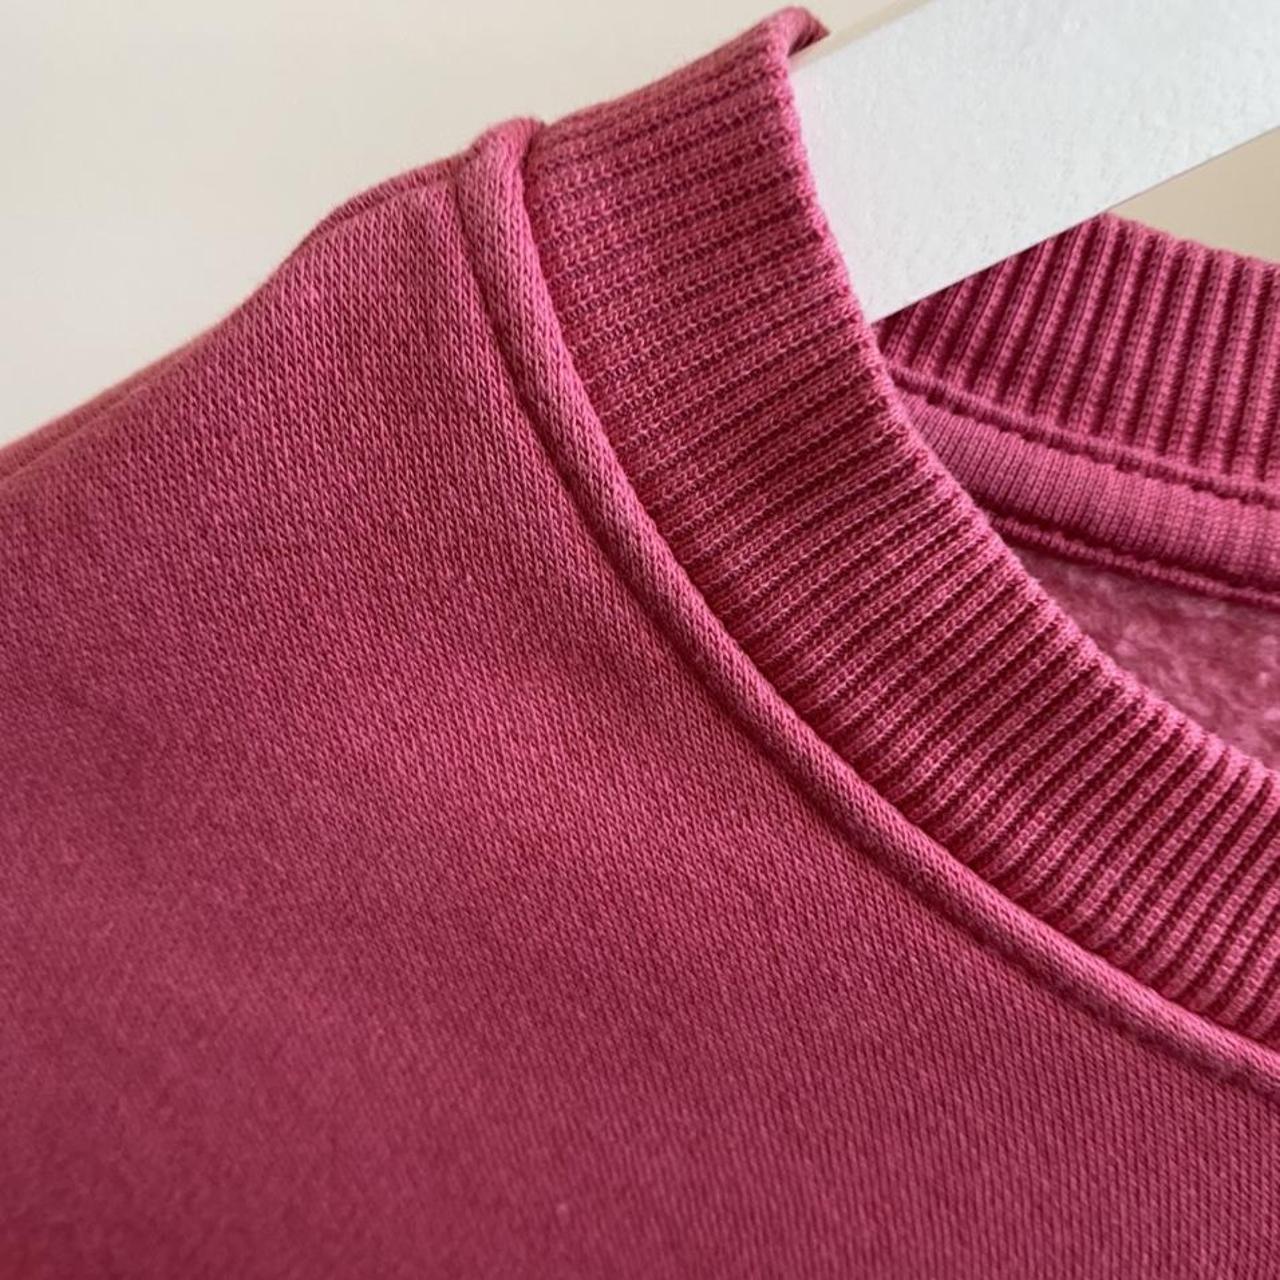 Forever 21 Women's Pink Sweatshirt | Depop